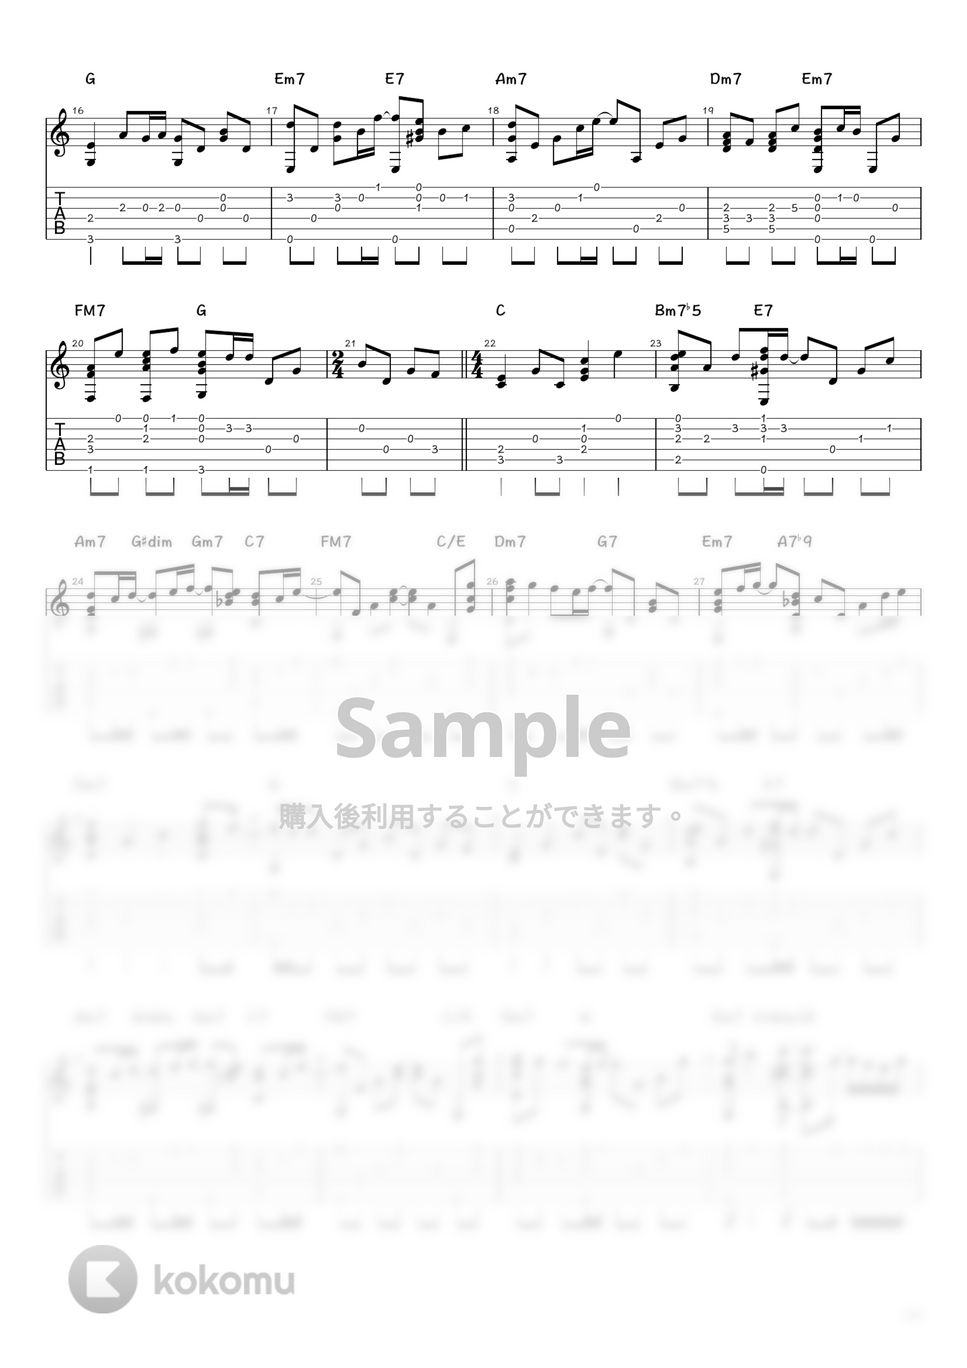 JUJU - 奇跡を望むなら... (ソロギター / タブ譜) by 井上さとみ